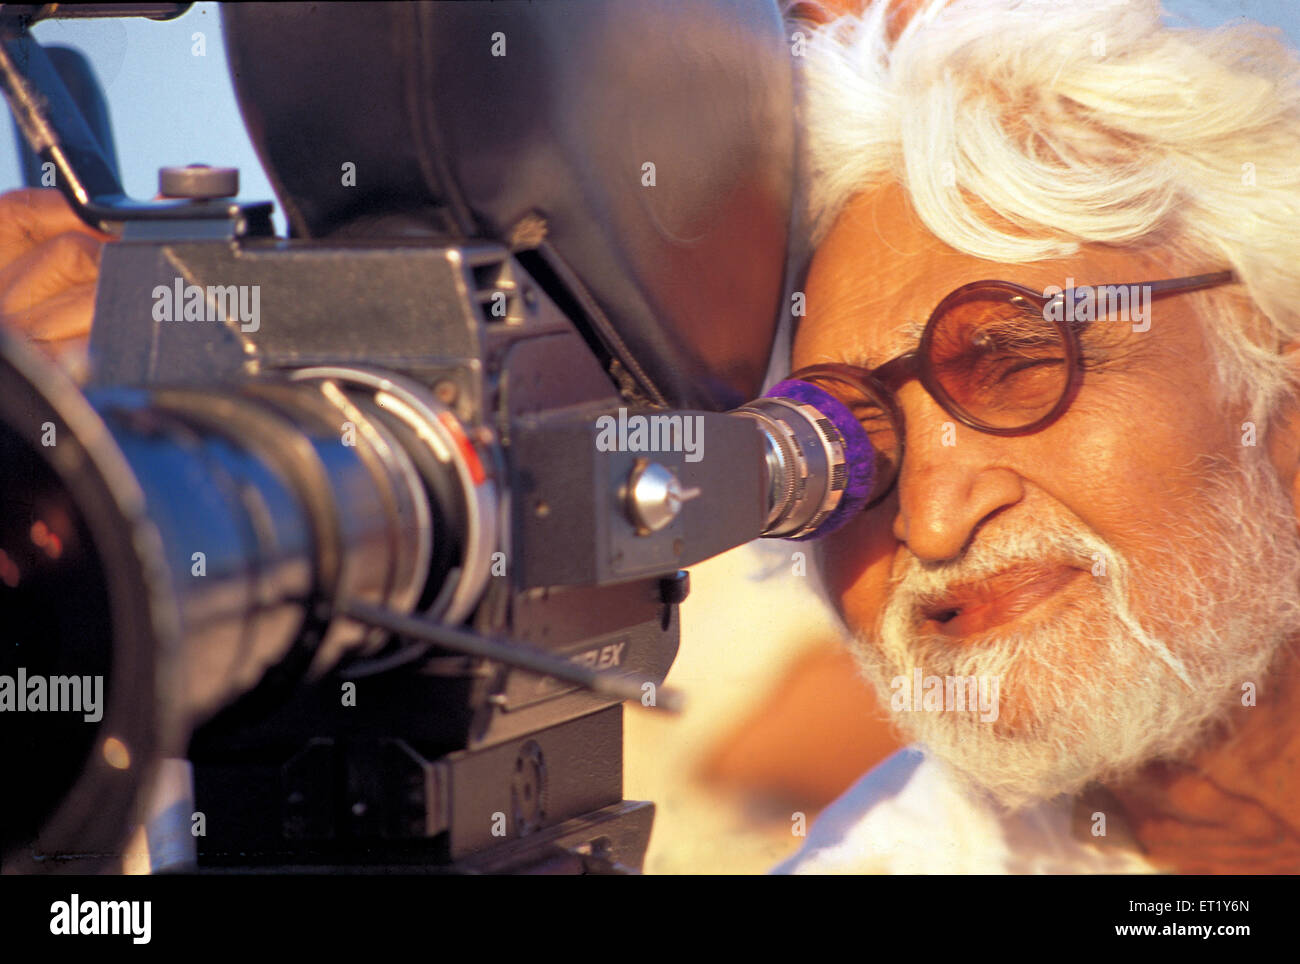 M F Hussain dietro la telecamera durante le riprese del film da ragazzo pandharpur India Asia Foto Stock